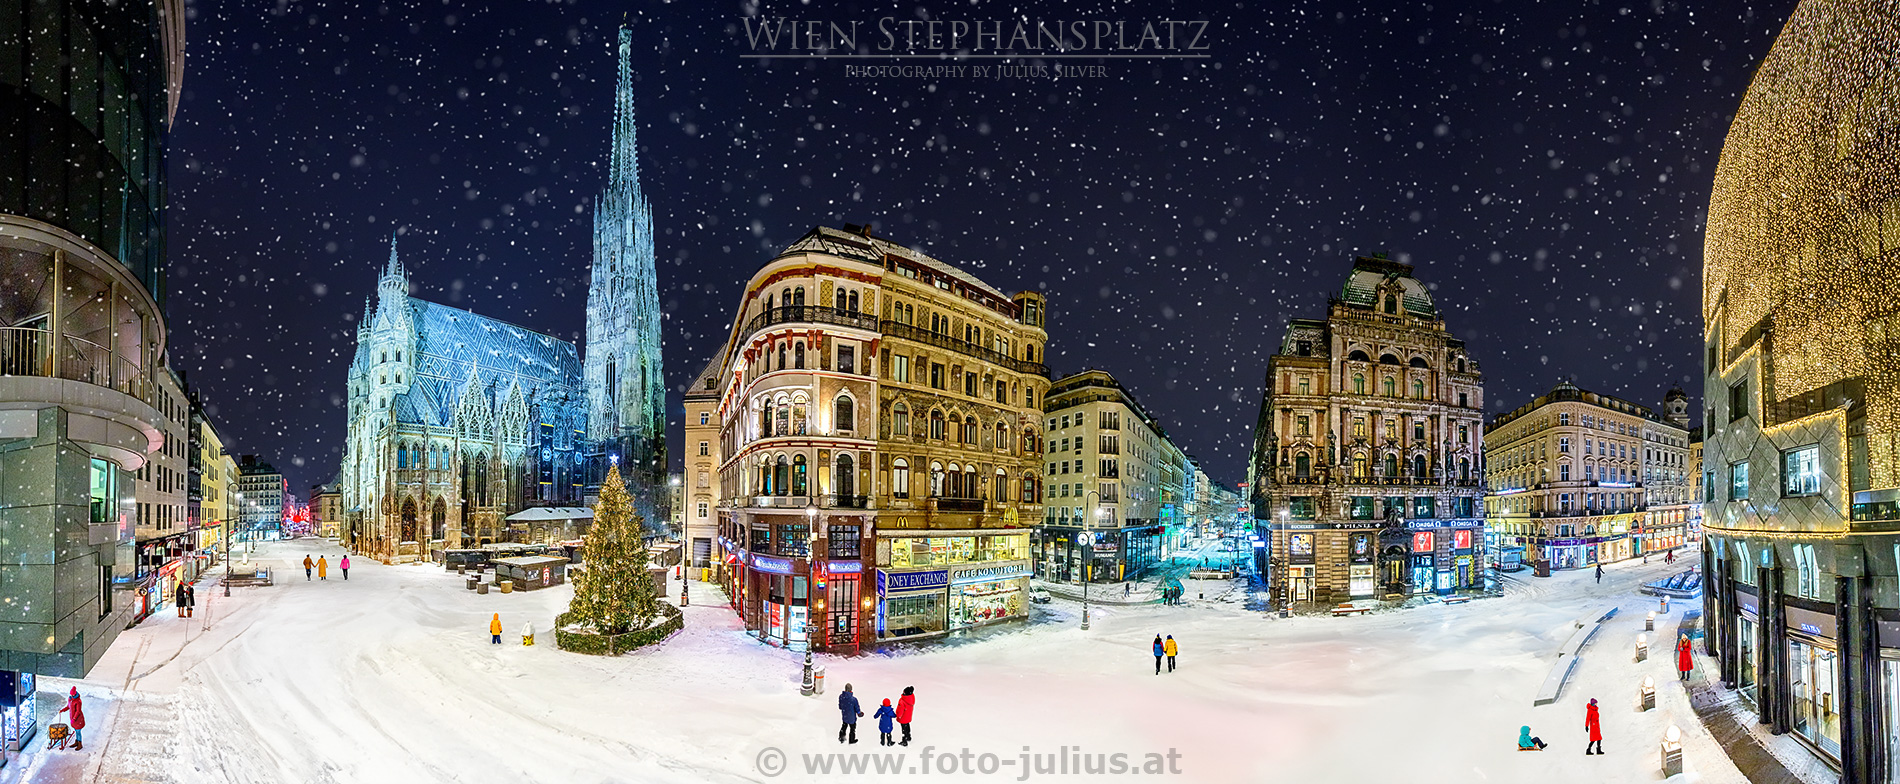 W6940a_Wien_Stephansplatz_Winter.jpg, 855kB